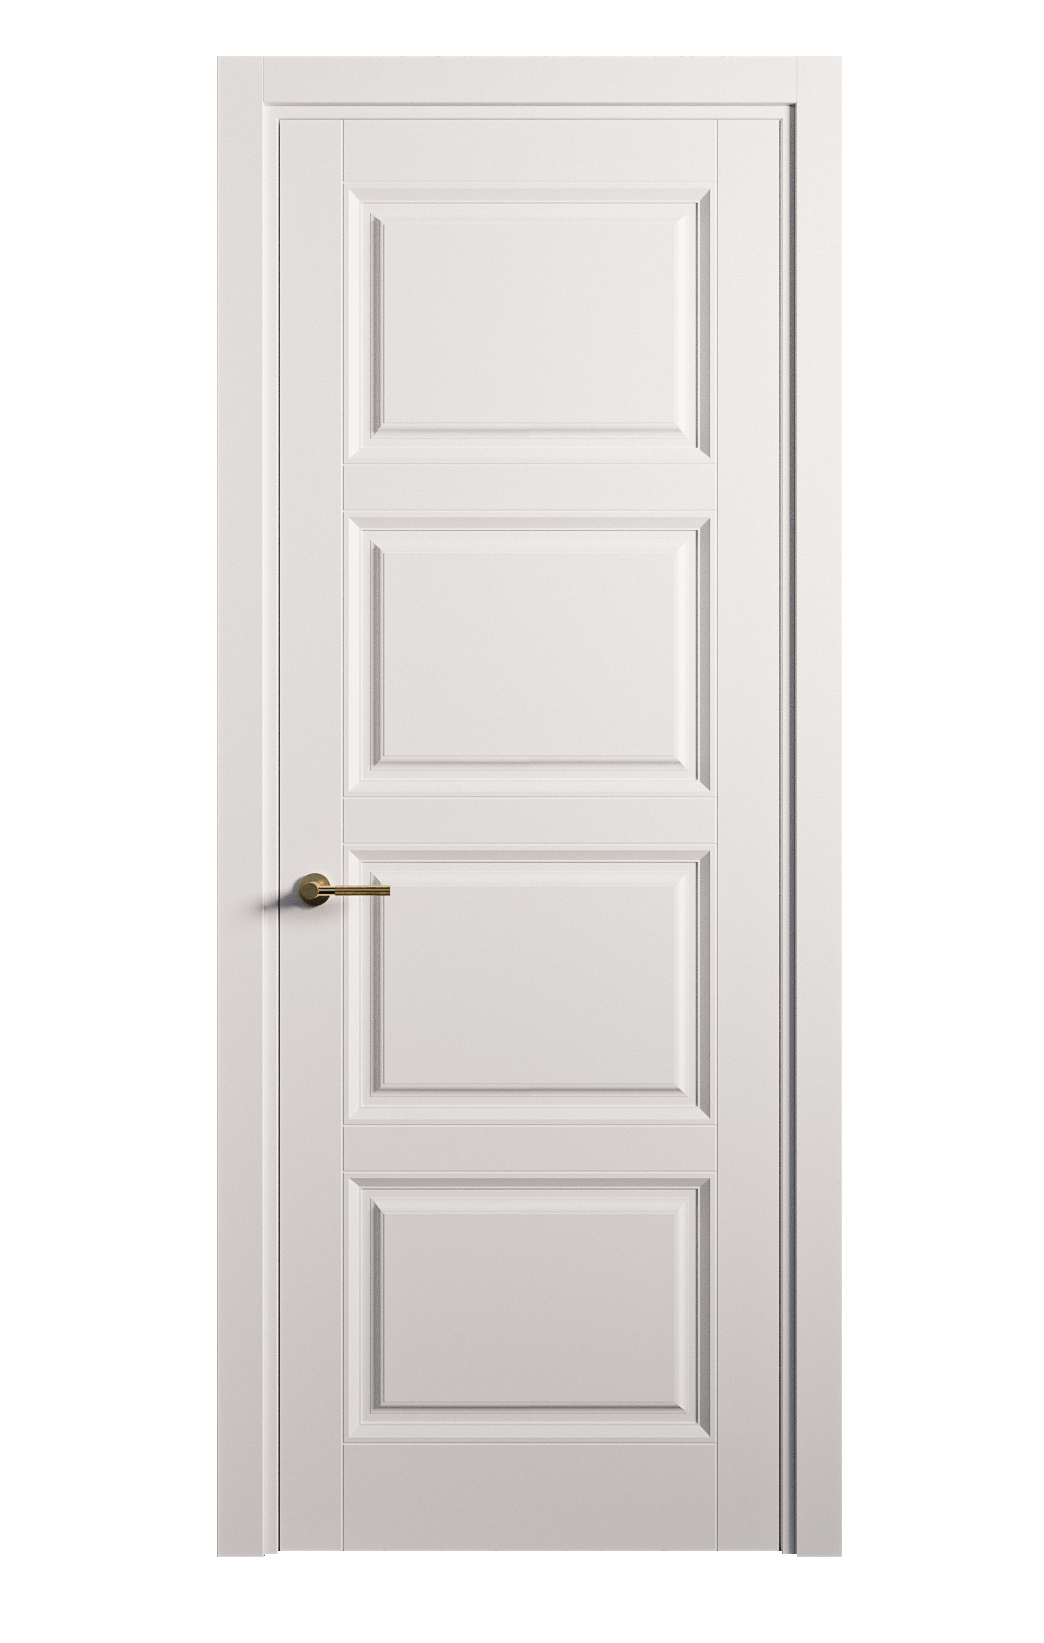 Межкомнатная дверь Venezia-4 глухая эмаль ral 9003 25873